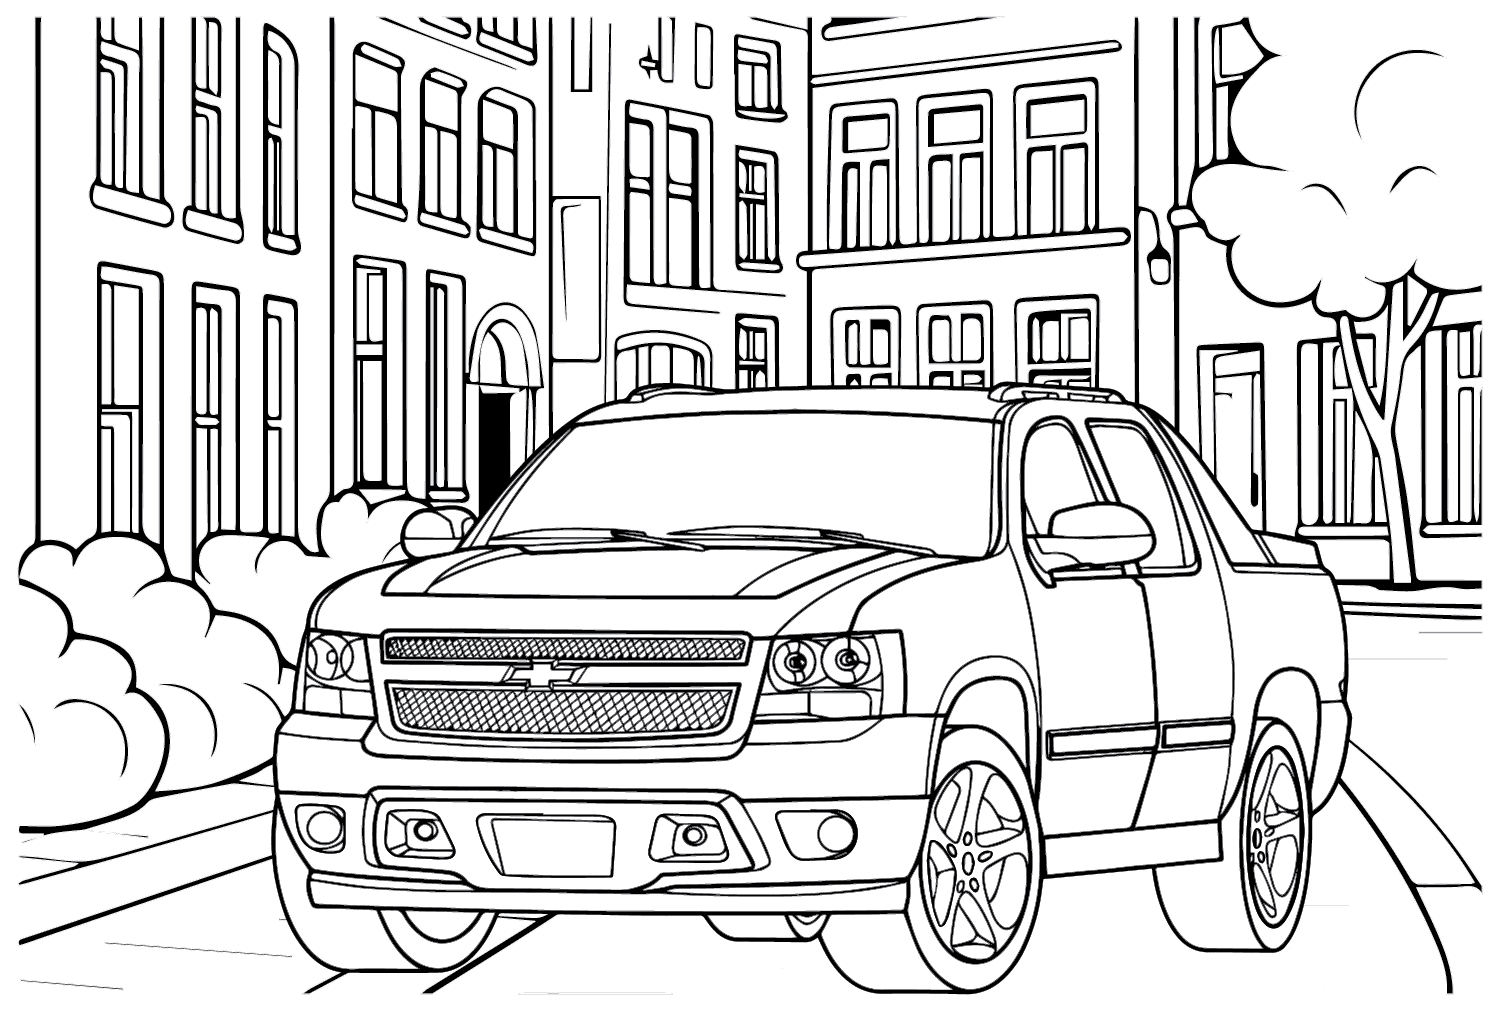 Página para colorir do Chevrolet Avalanche da Chevrolet